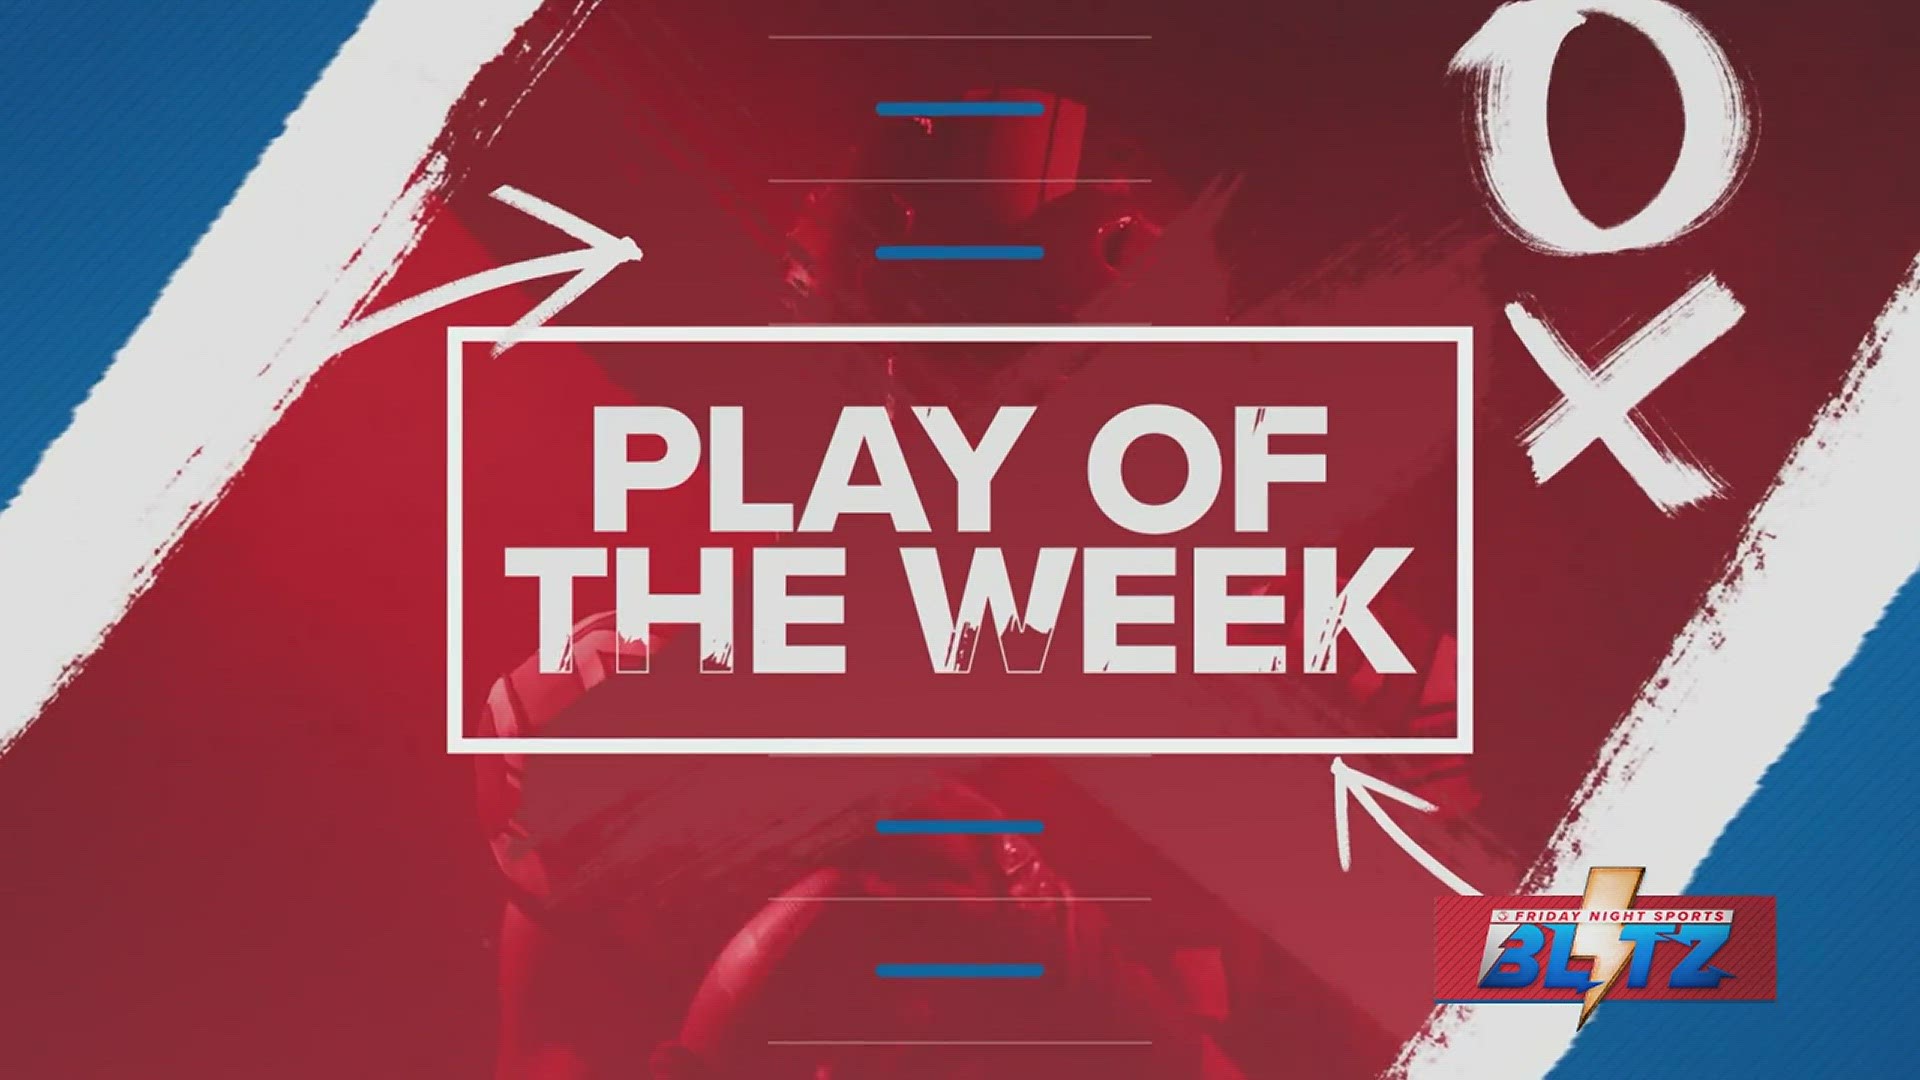 Kingsville King's Donavan Bencze wins the Week 4 "Play of the Week."